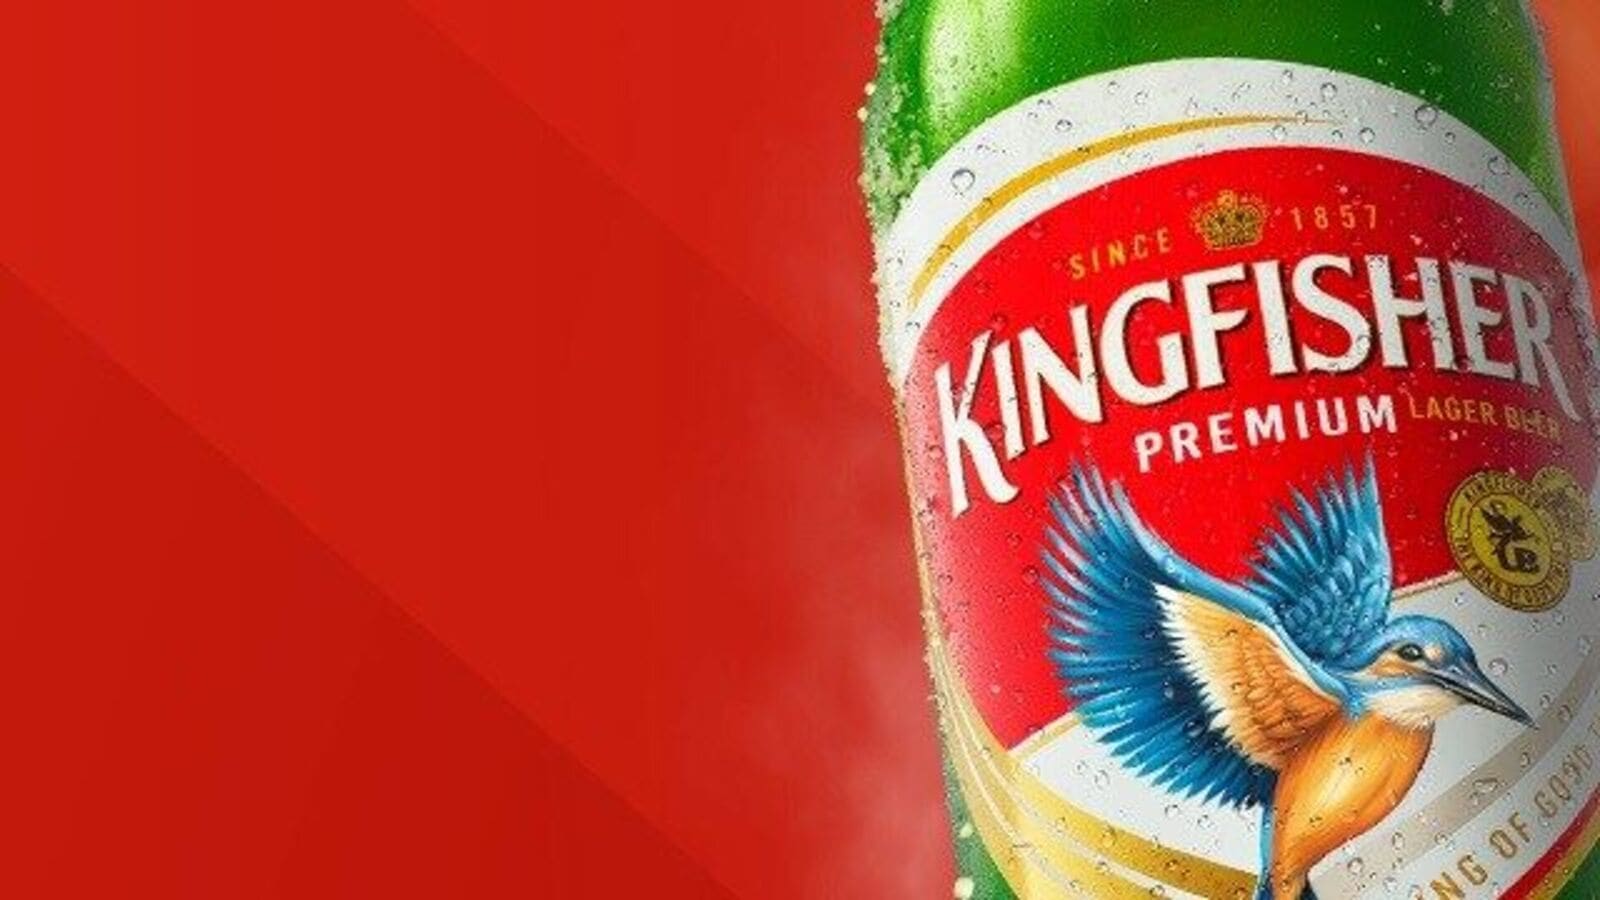 HD kingfisher beer wallpapers | Peakpx